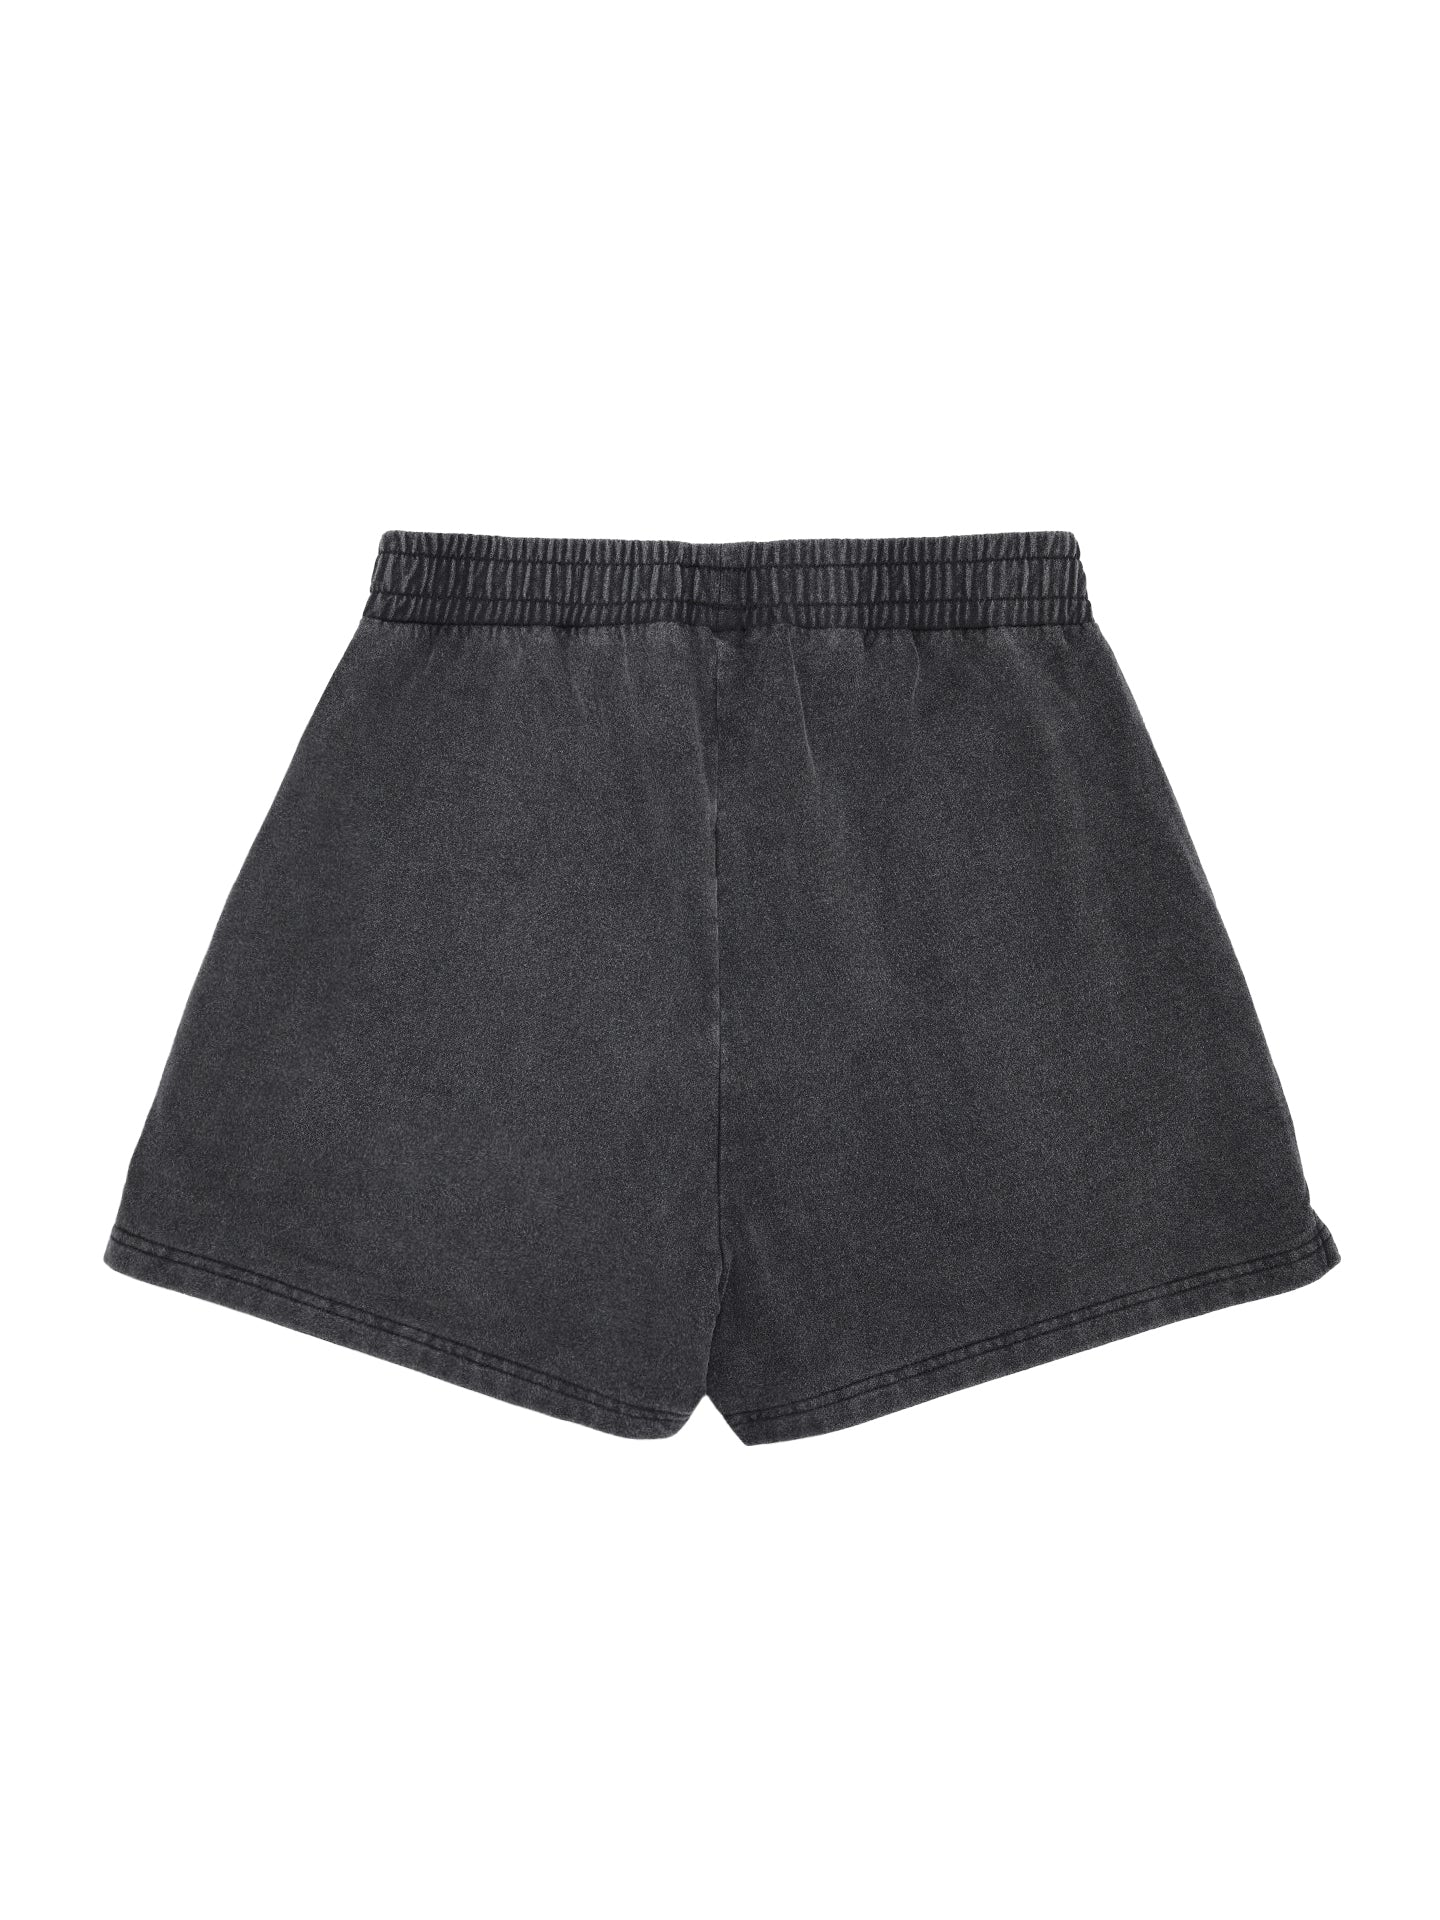 Shorts - Vintage Black